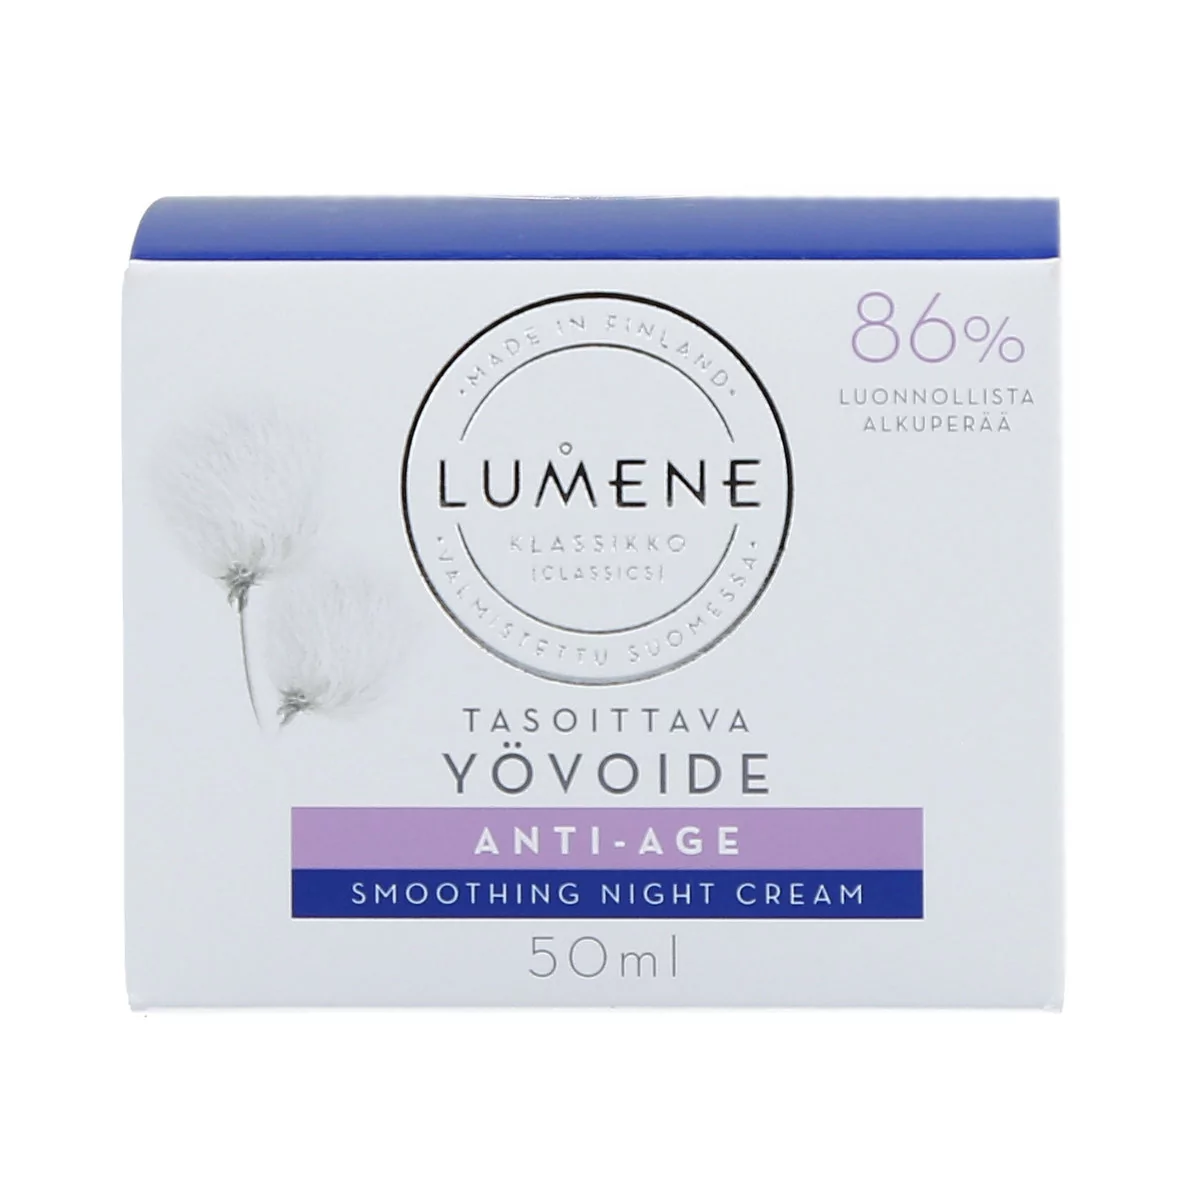 Lumene KLASSIKKO - Smoothing Night Cream - Wygładzający krem do twarzy na noc